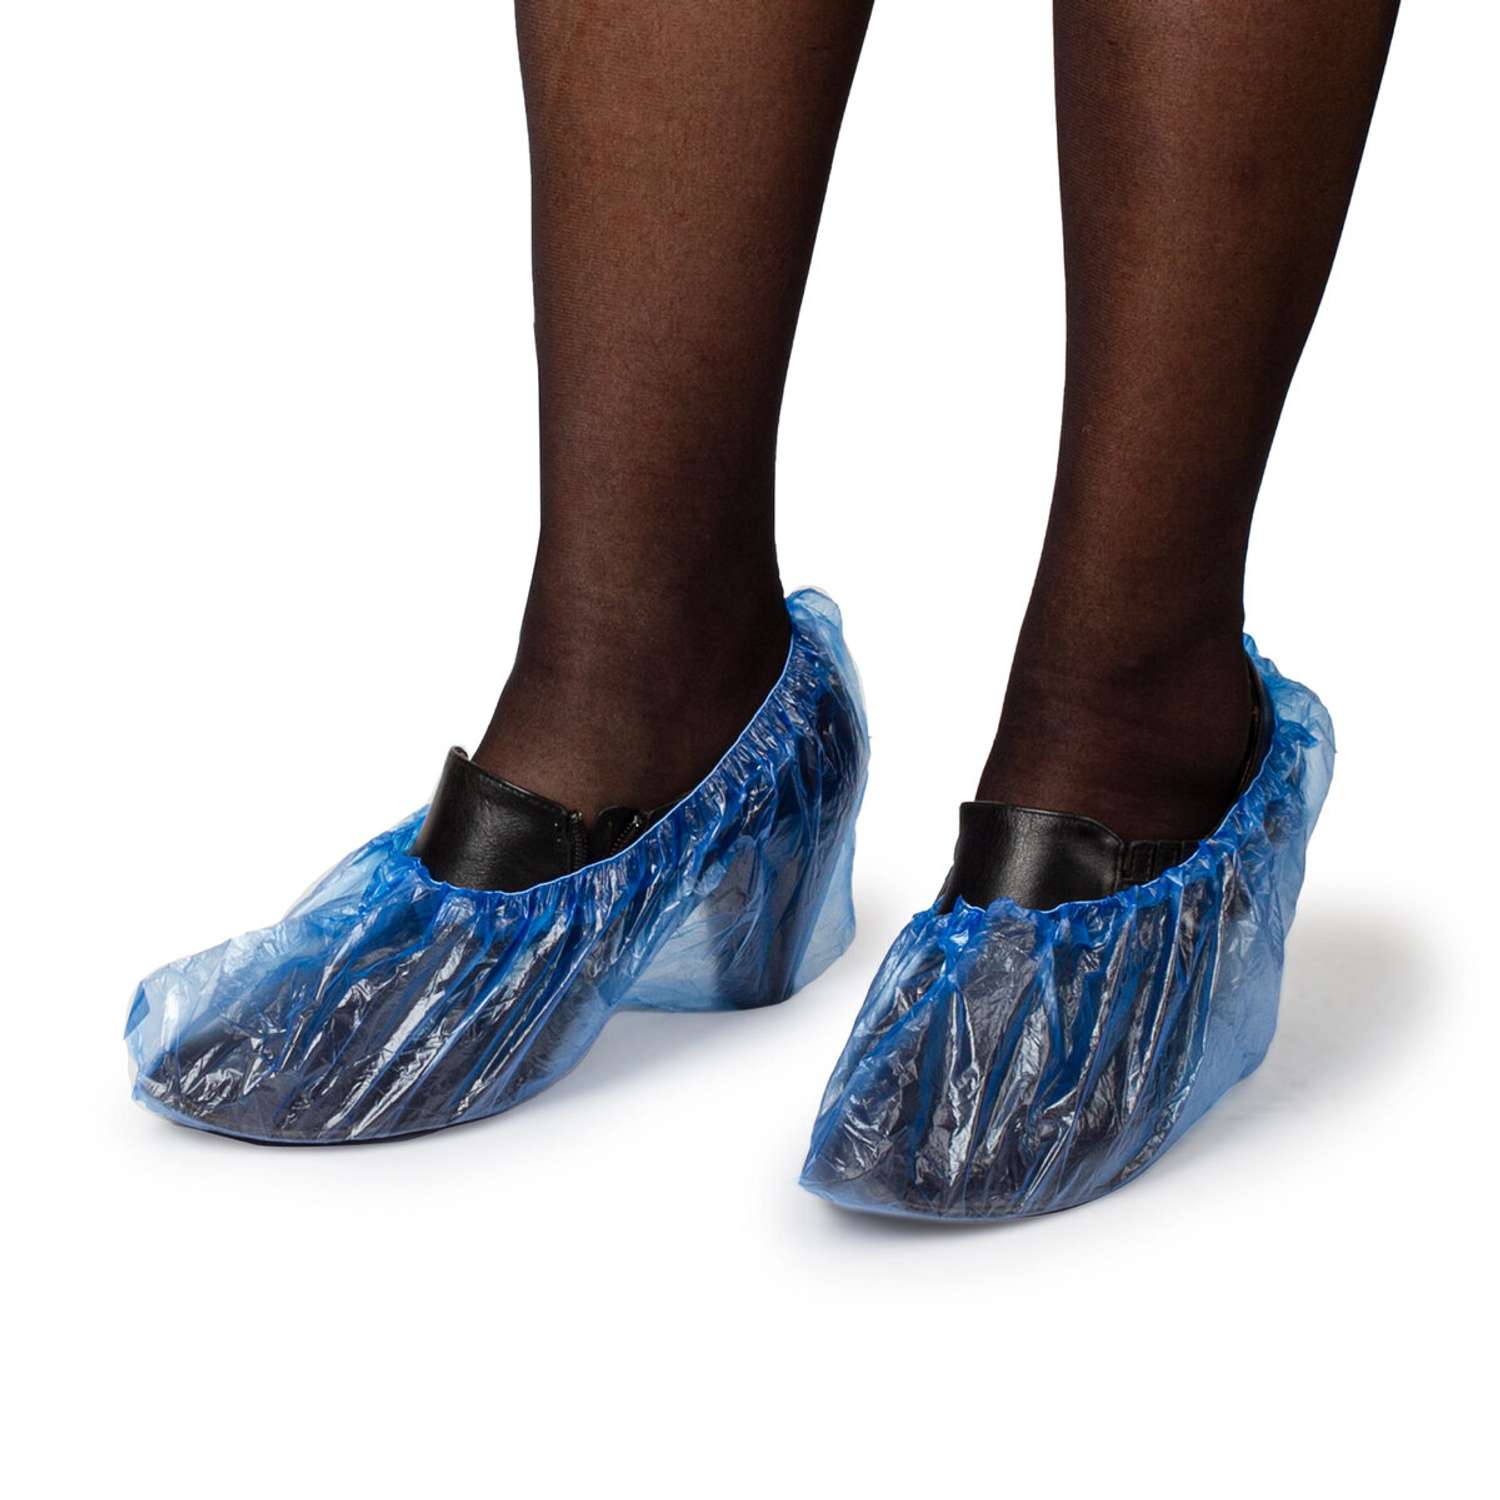 Бахилы одноразовые Лайма для обуви комплект 2000 штук / 1000 пар в упаковке Стандарт+ размер 40х14 см - фото 4